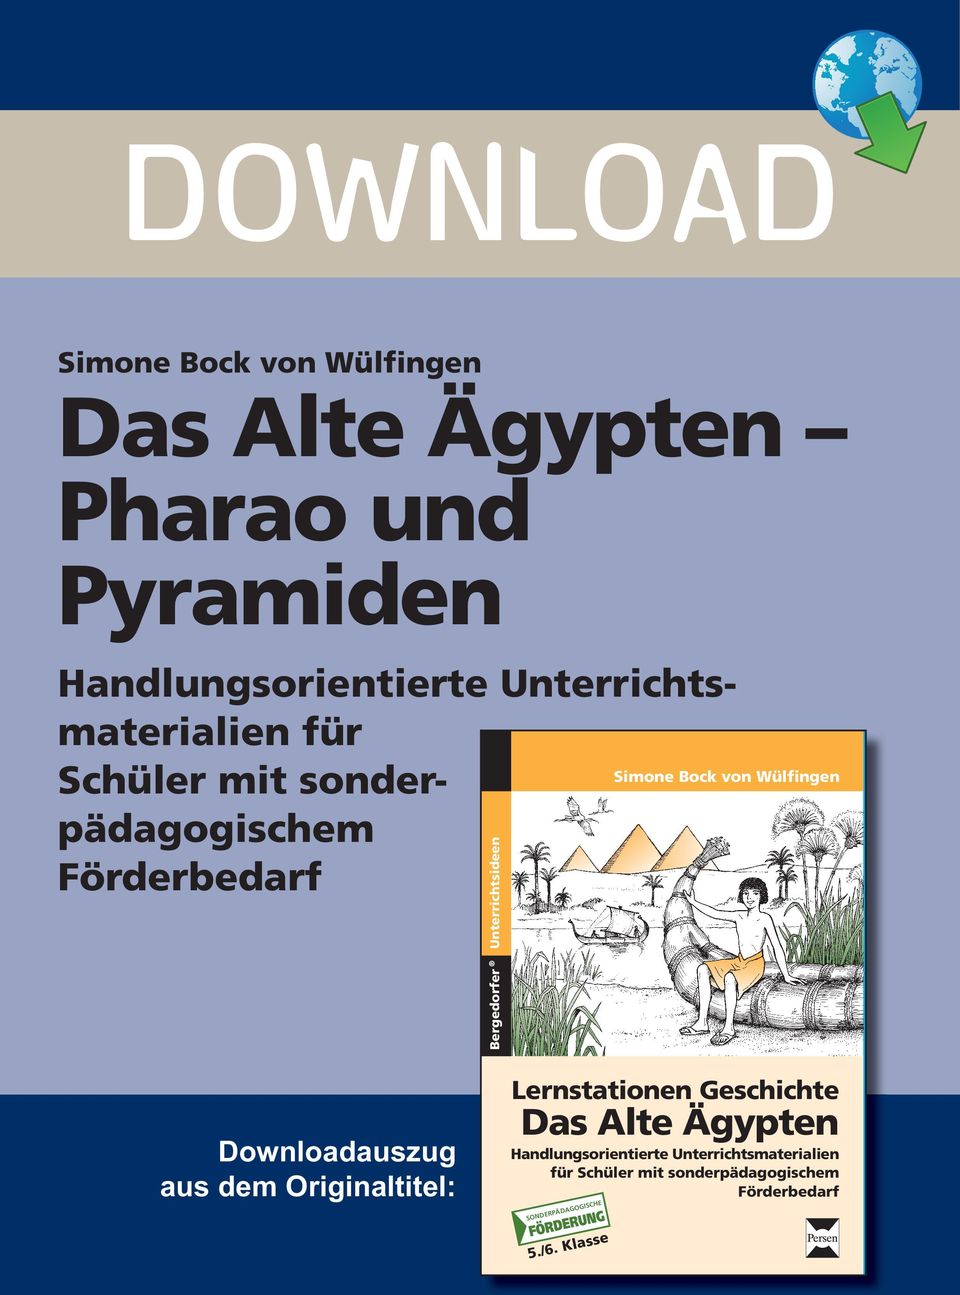 Bock von Wülfingen Downloadauszug aus dem Originaltitel: Lernstationen Geschichte Das Alte Ägypten